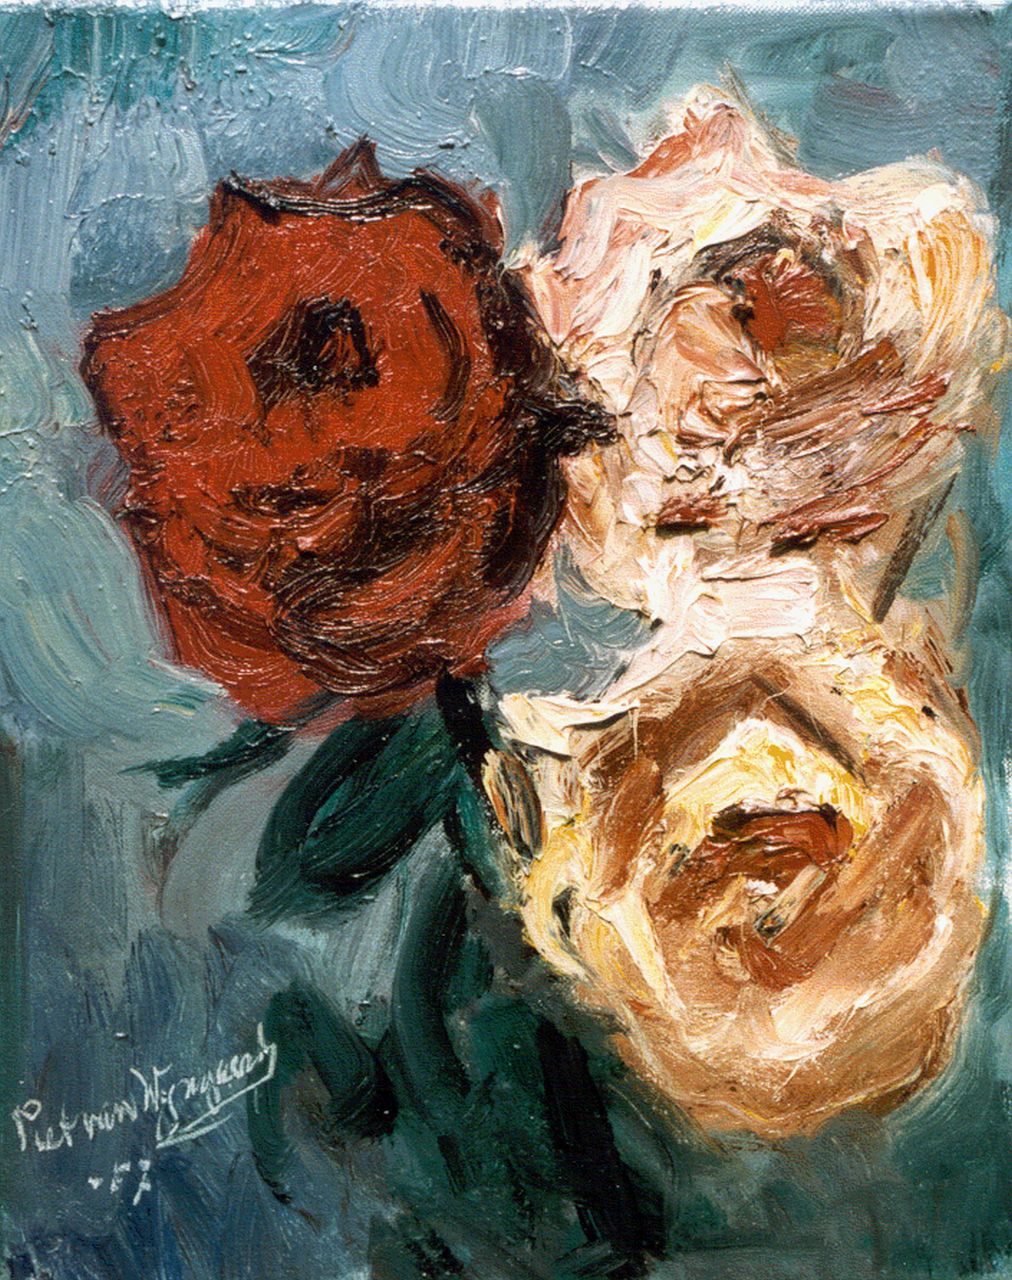 Wijngaerdt P.T. van | Petrus Theodorus 'Piet' van Wijngaerdt, Roses, oil on canvas 30.0 x 24.0 cm, signed l.l. and dated '57